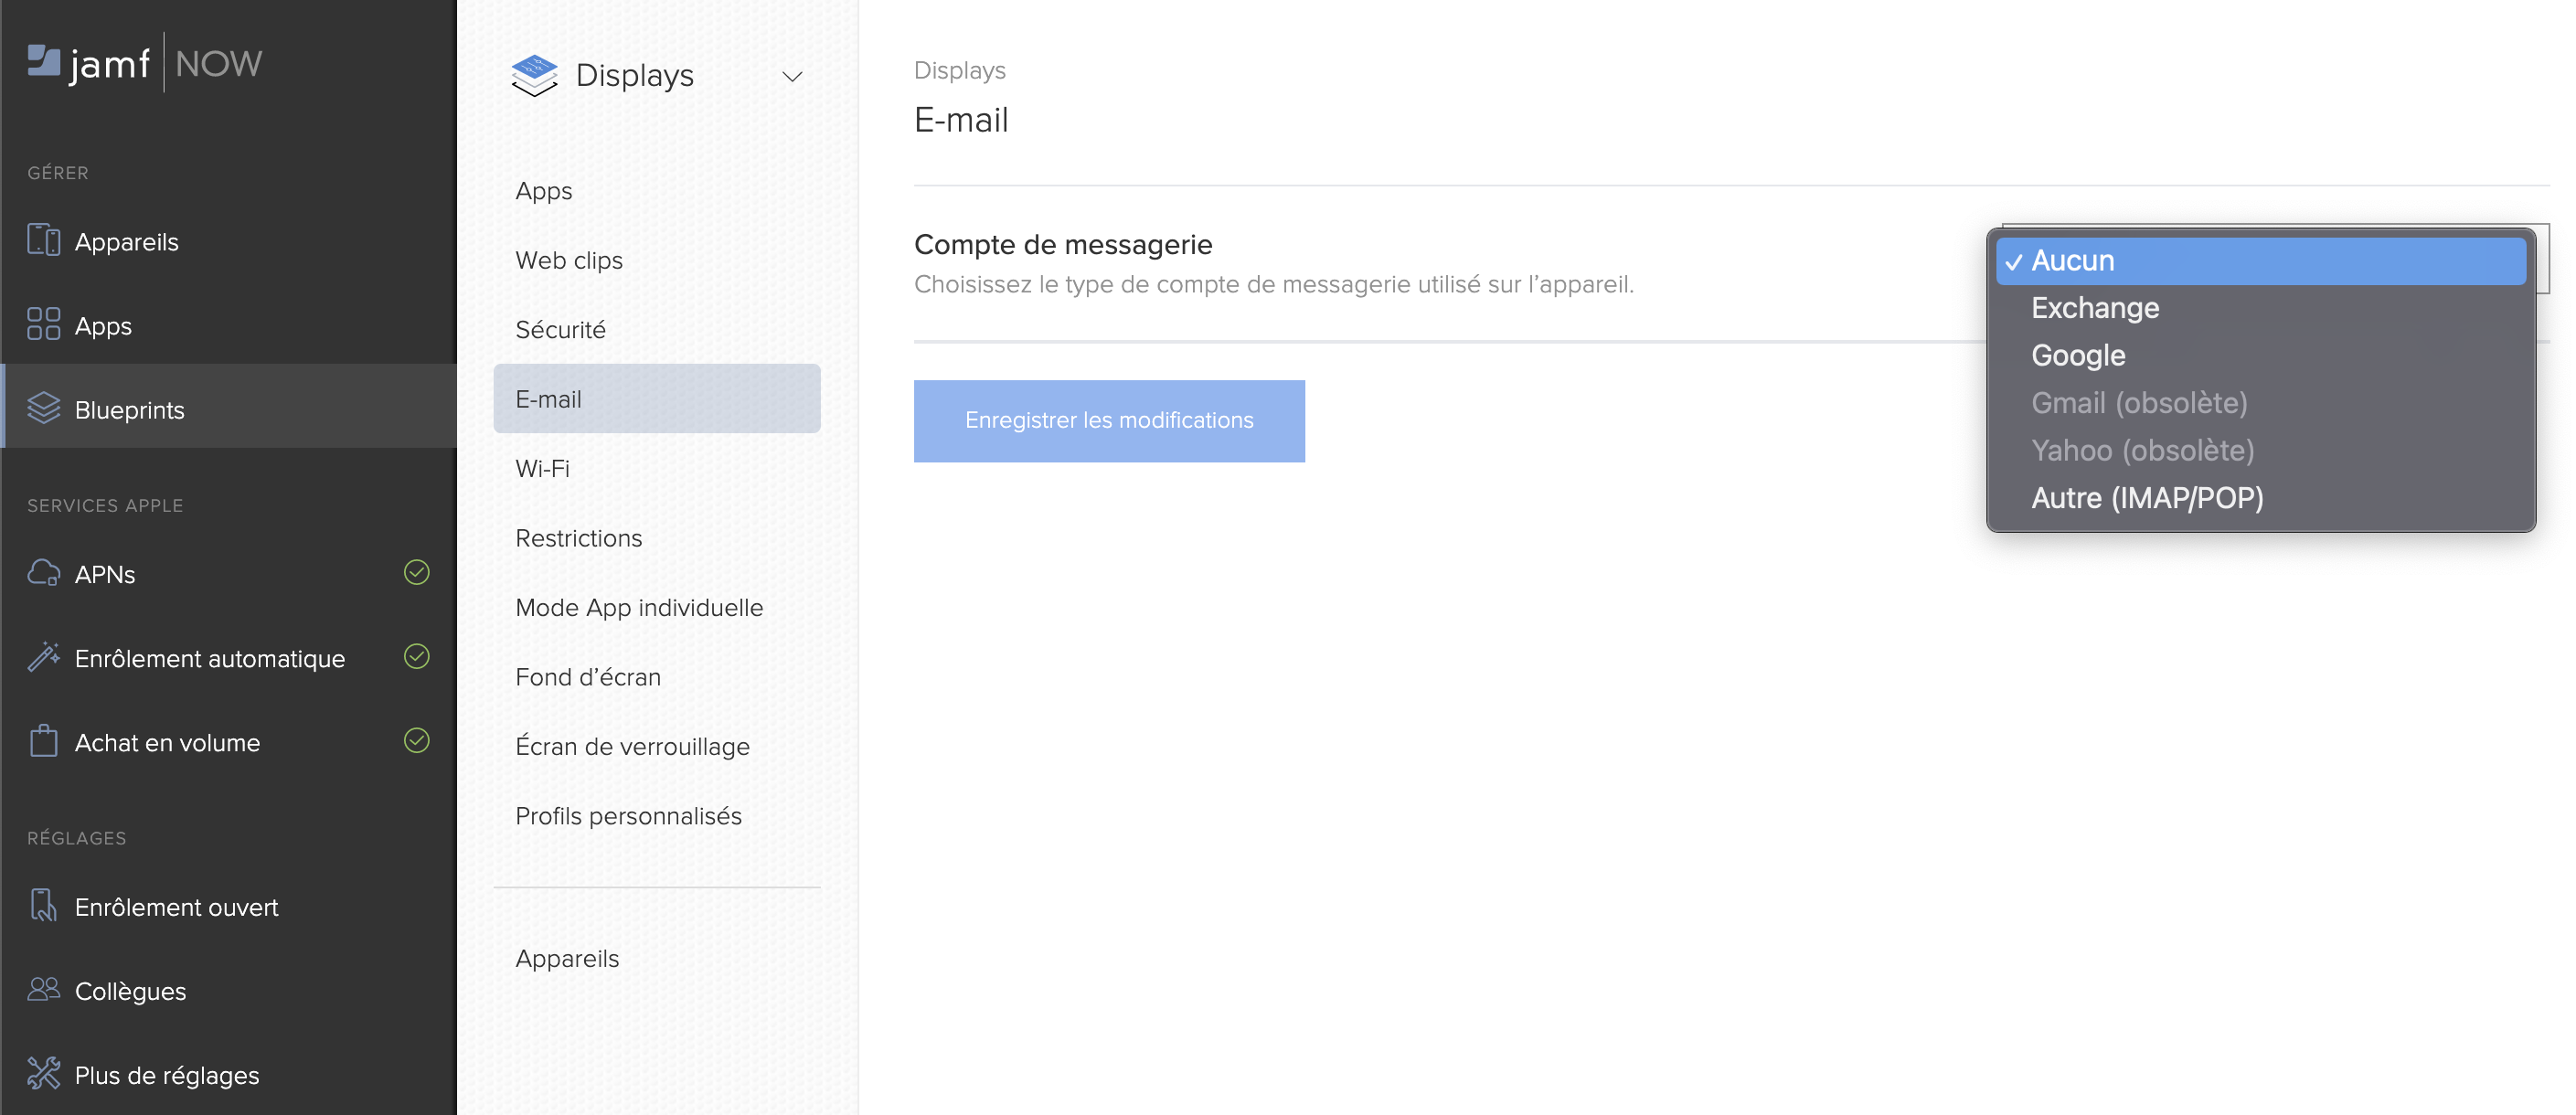 Capture d’écran des options disponibles dans un Blueprint pour un compte de messagerie.